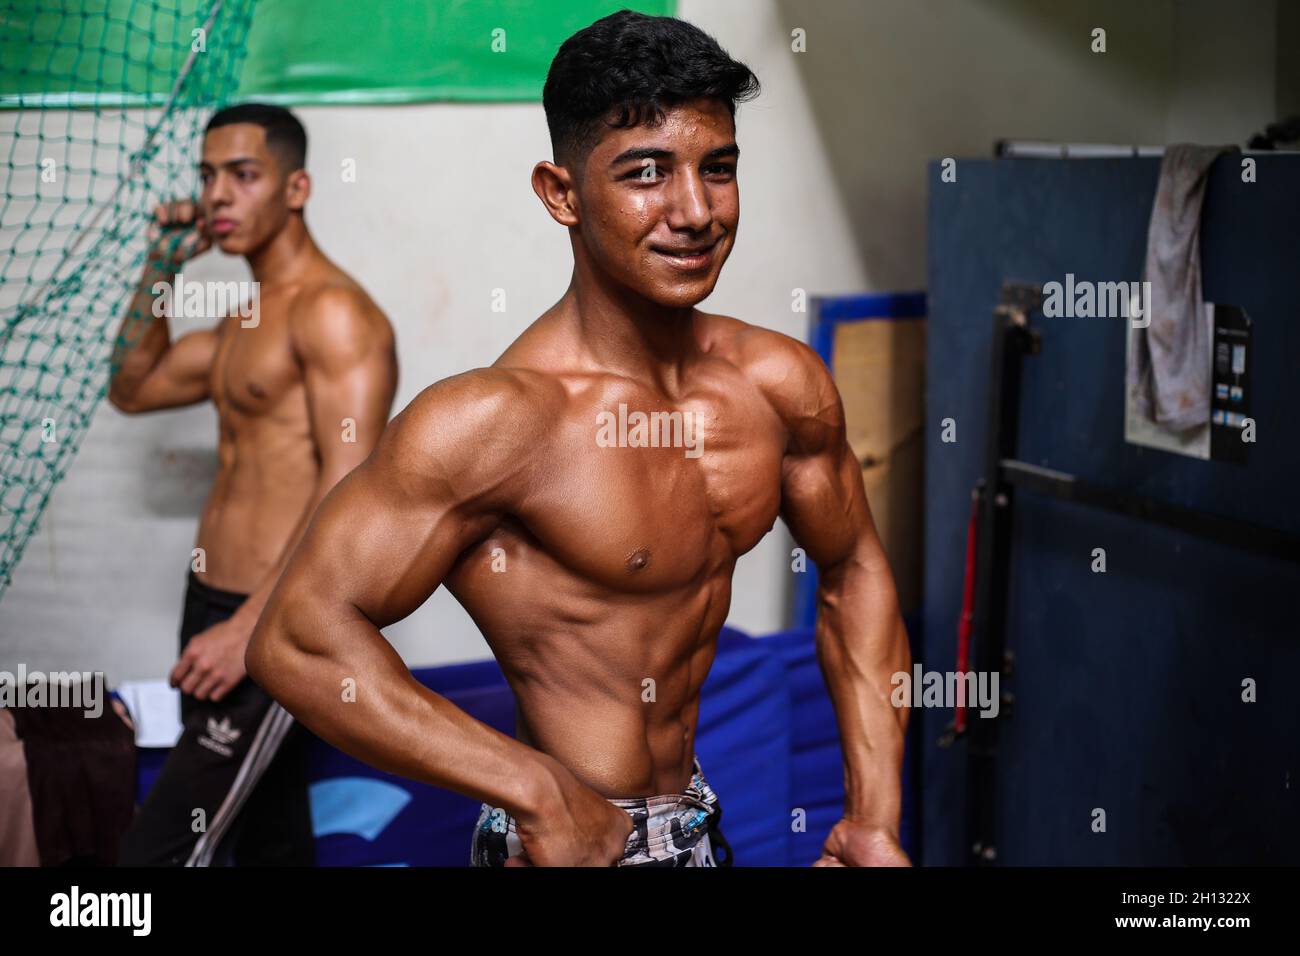 Un atleta mostra i suoi muscoli del corpo durante il campionato. La  federazione palestinese di bodybuilding & fitness ha organizzato  bodybuilding e campionato fisico nel club sportivo di Gaza, a nord della